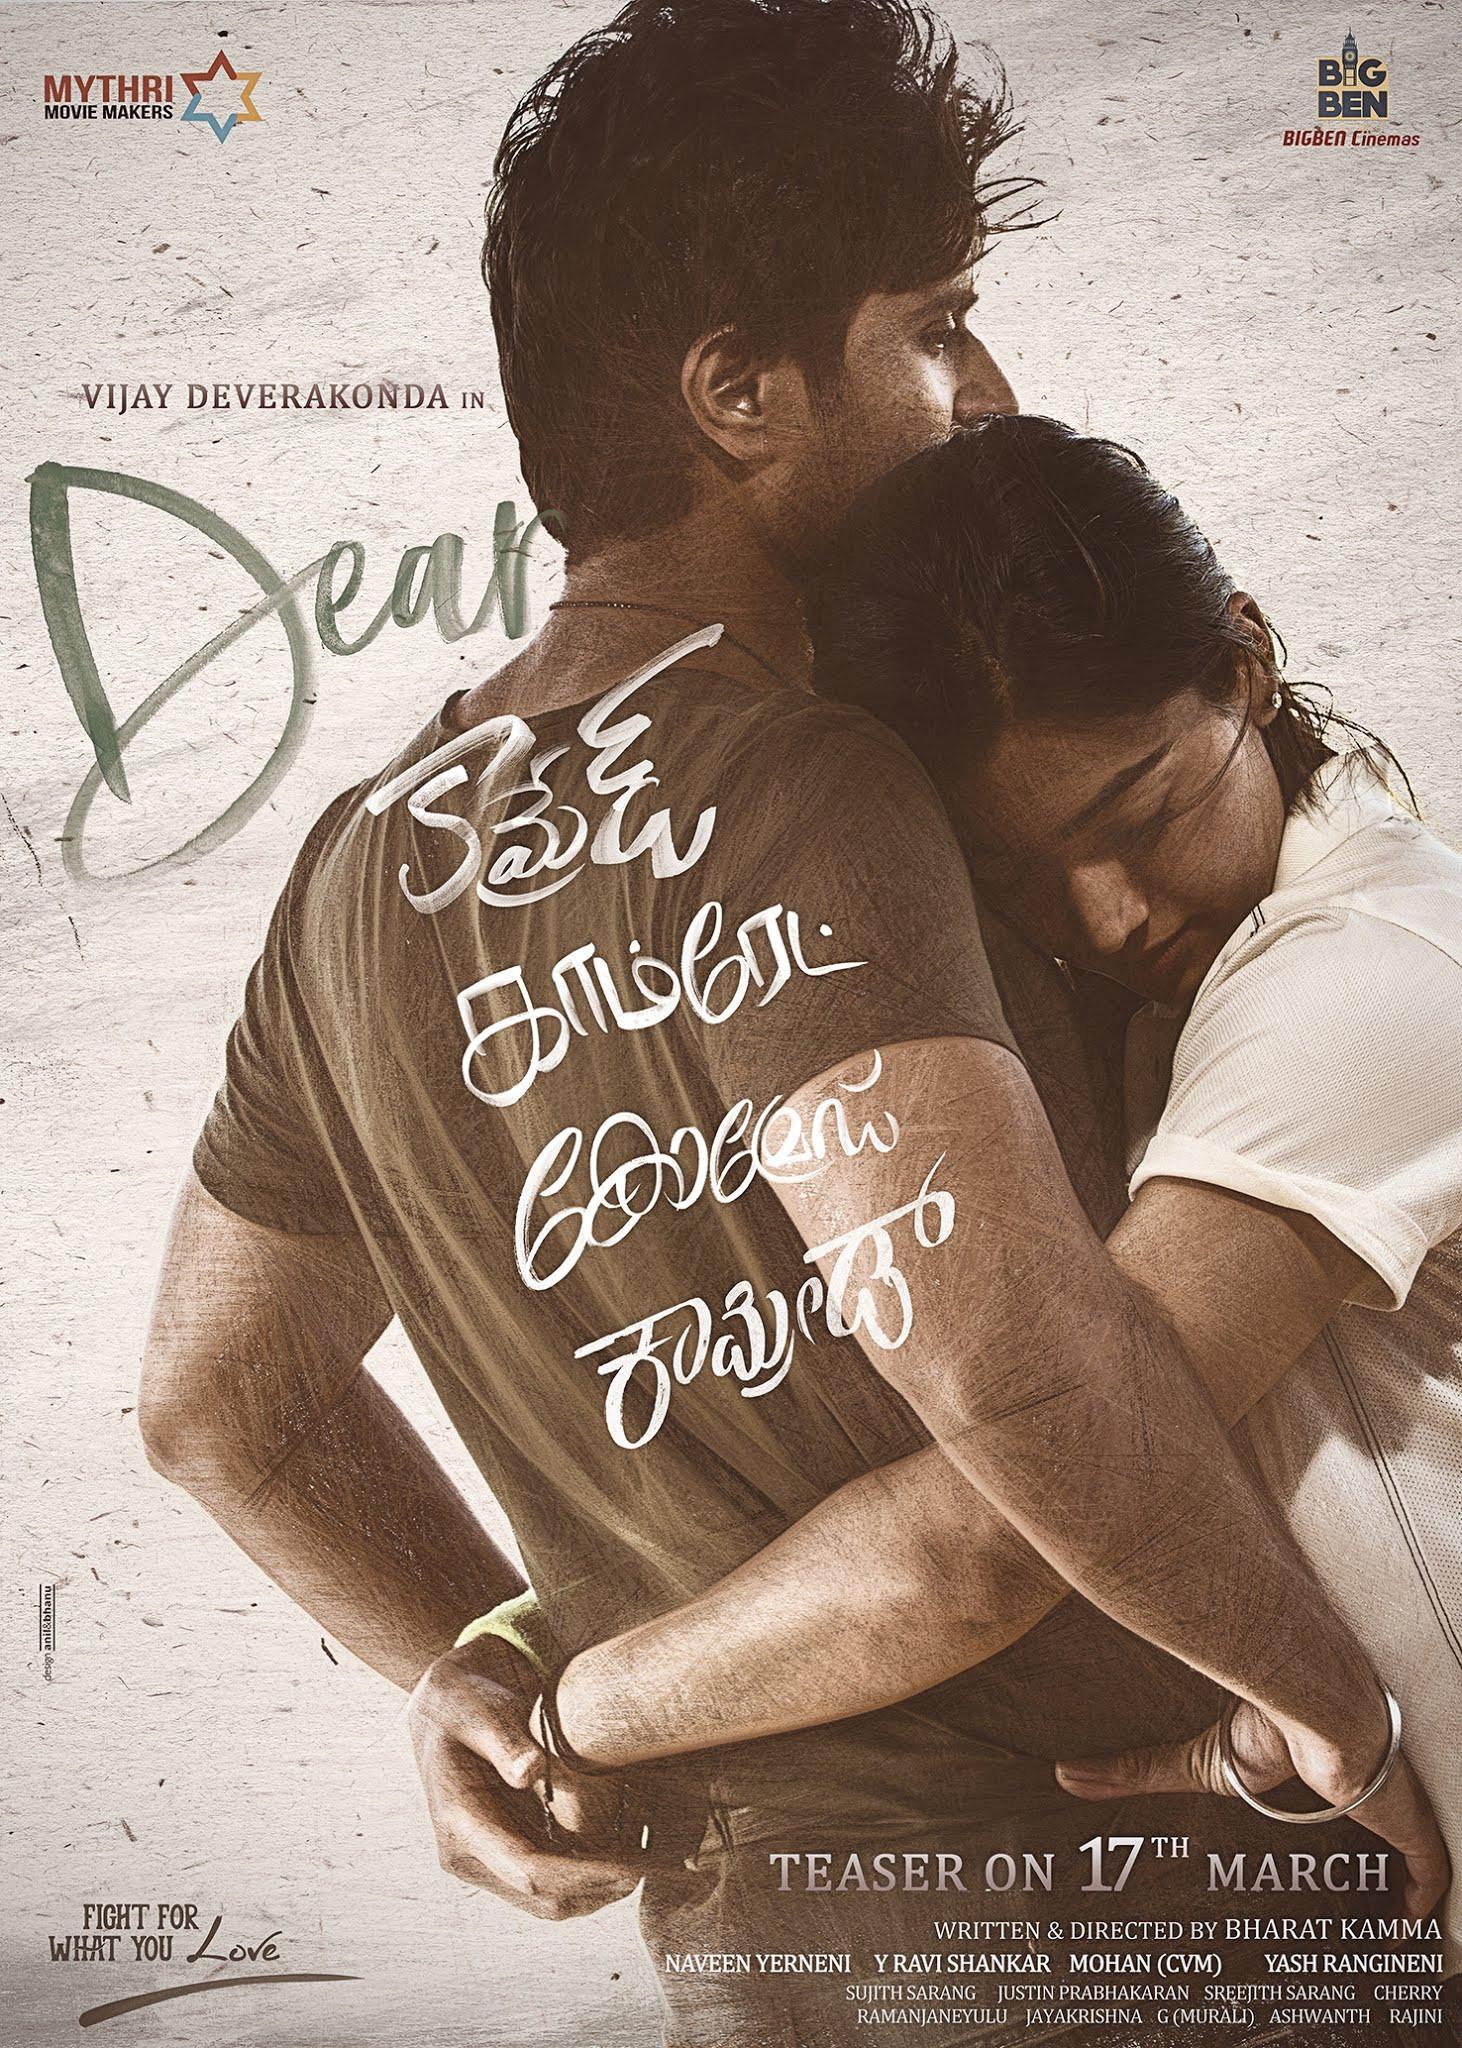 Vijay Deverakonda's Dear Comrade Teaser from March 17th. New Movie